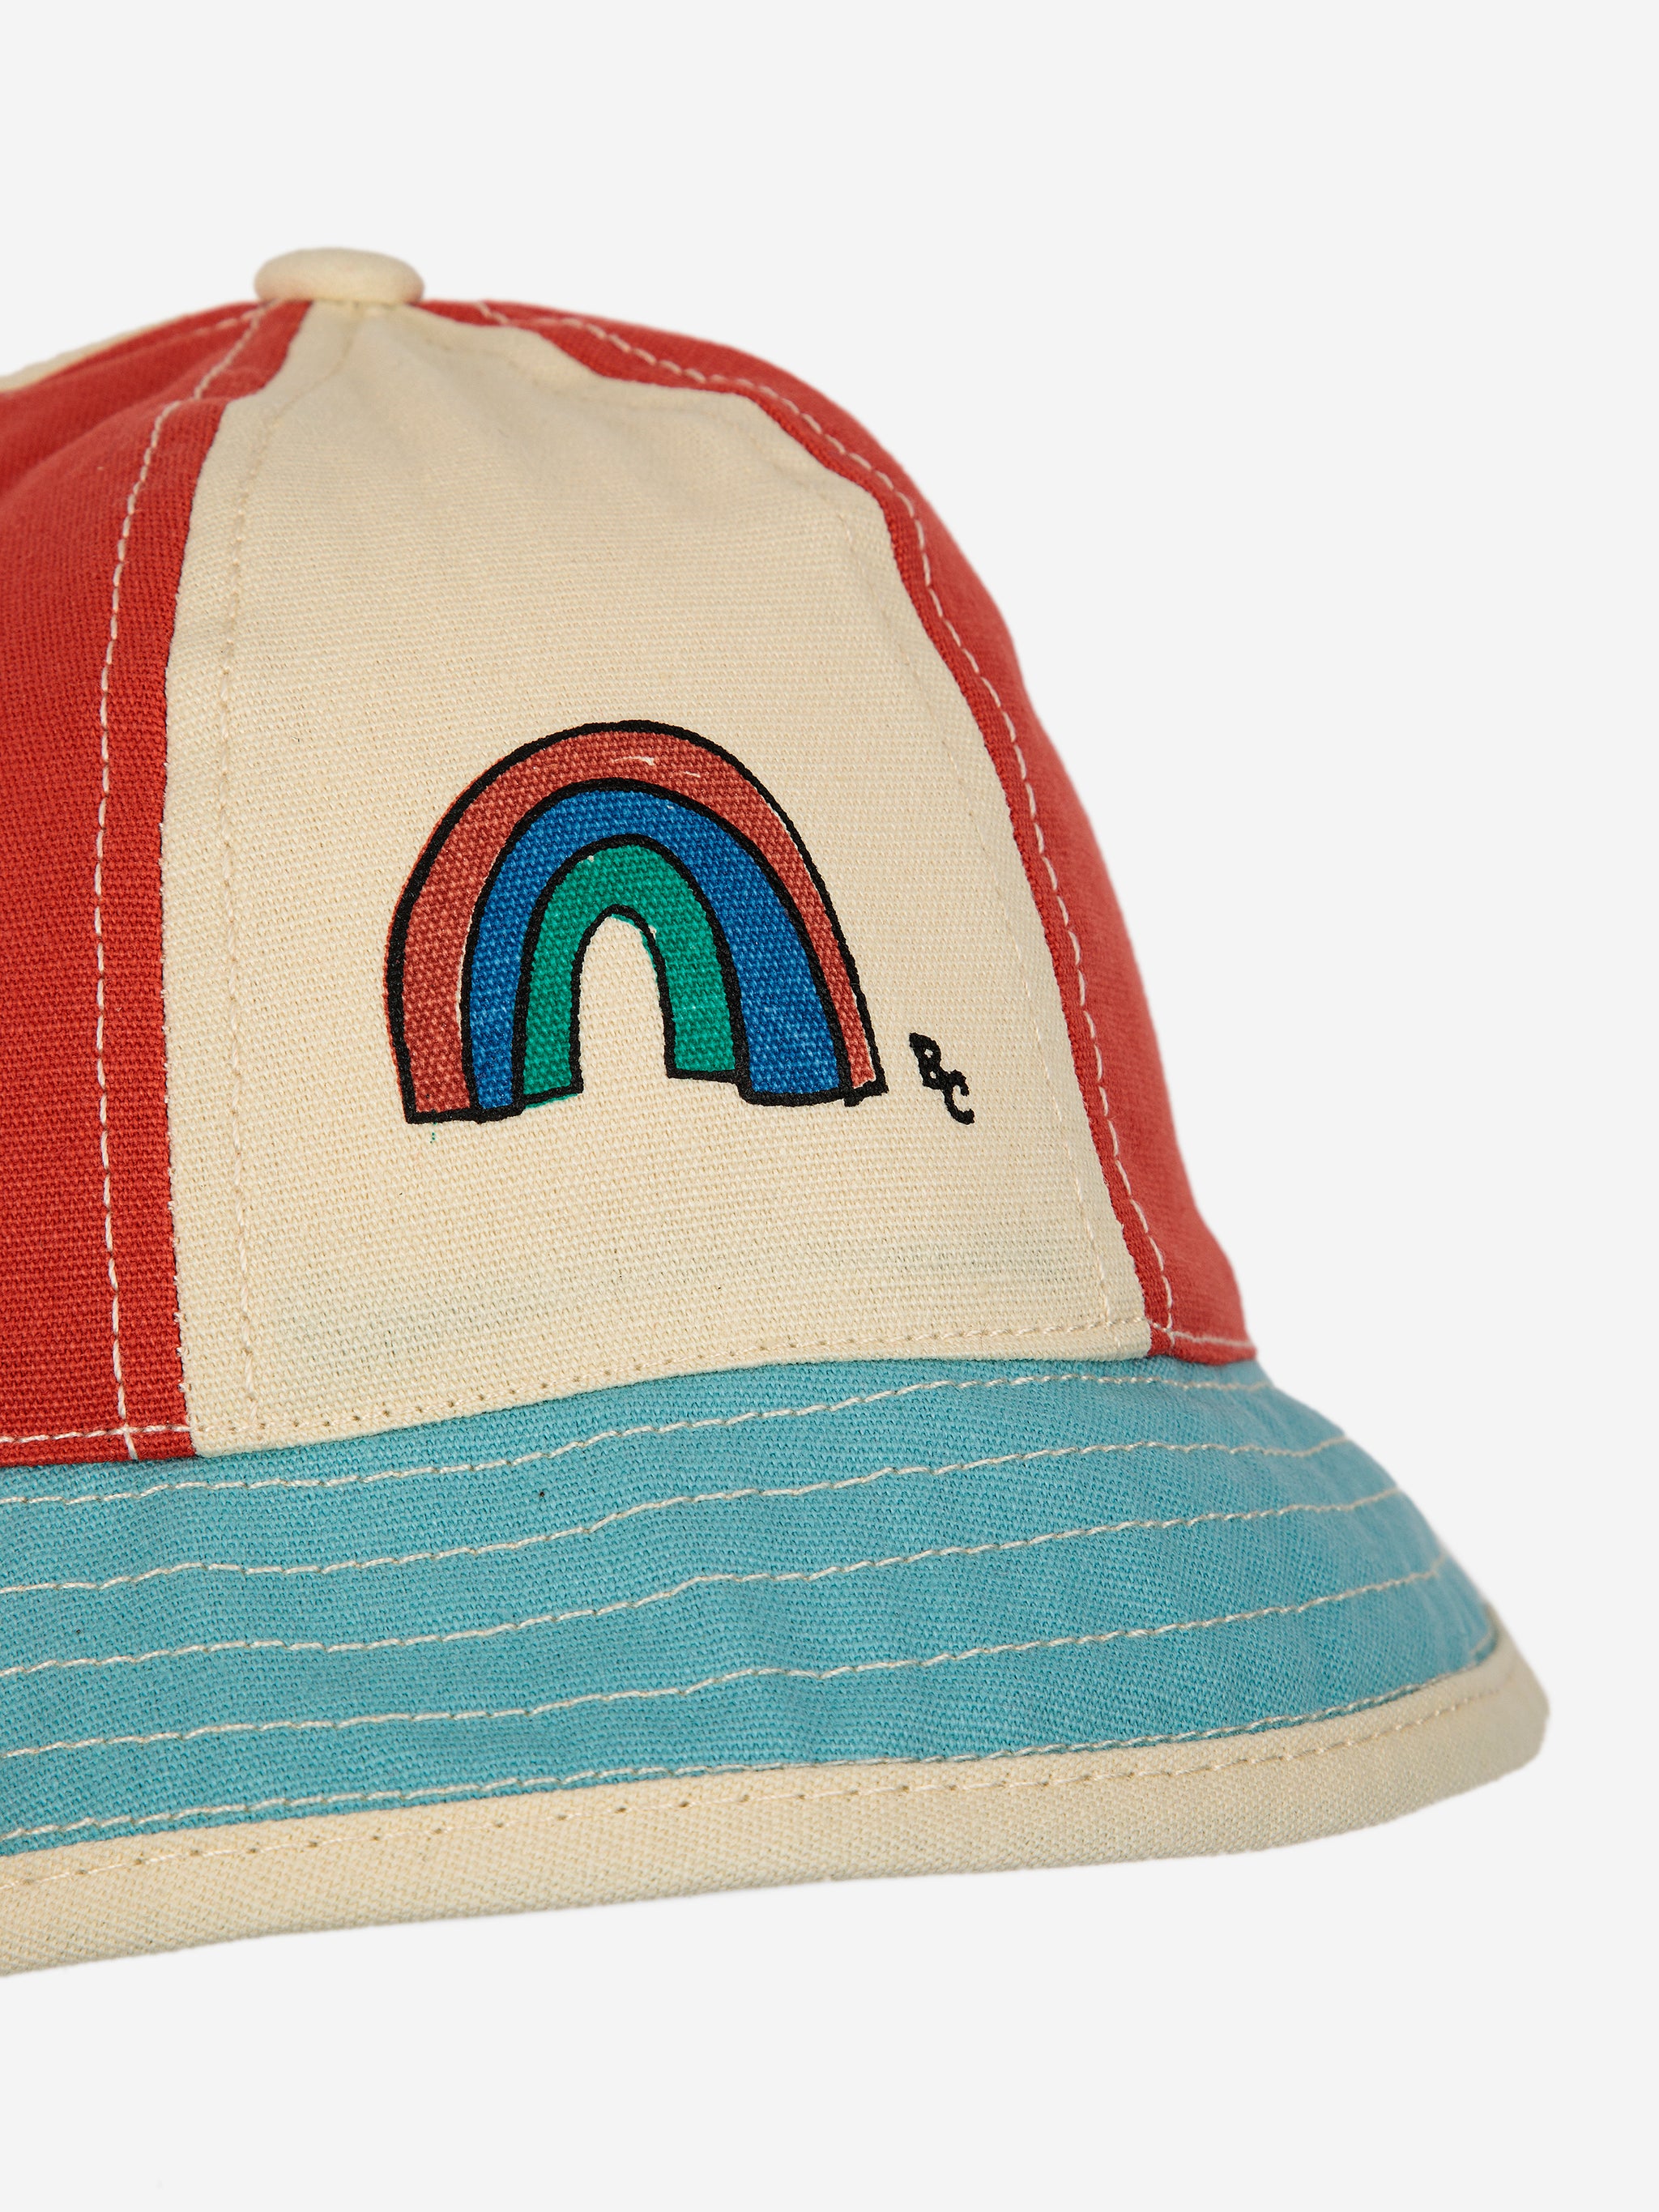 Bobo Choses Baby Rainbow Multicolor Hat - Multicolor